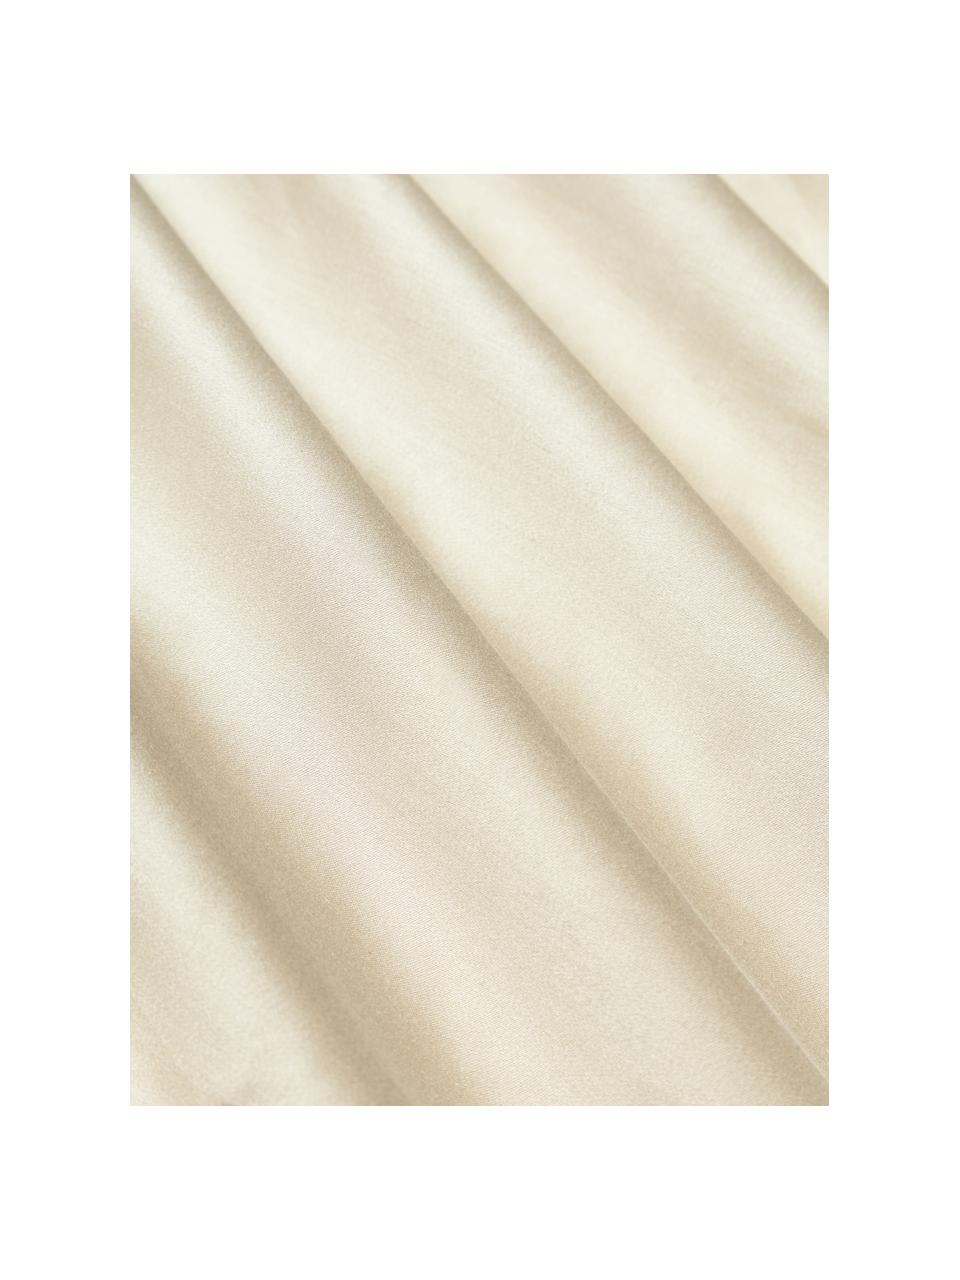 Drap plat en soie de mûrier Marianna, Blanc cassé, larg. 240 x long. 280 cm